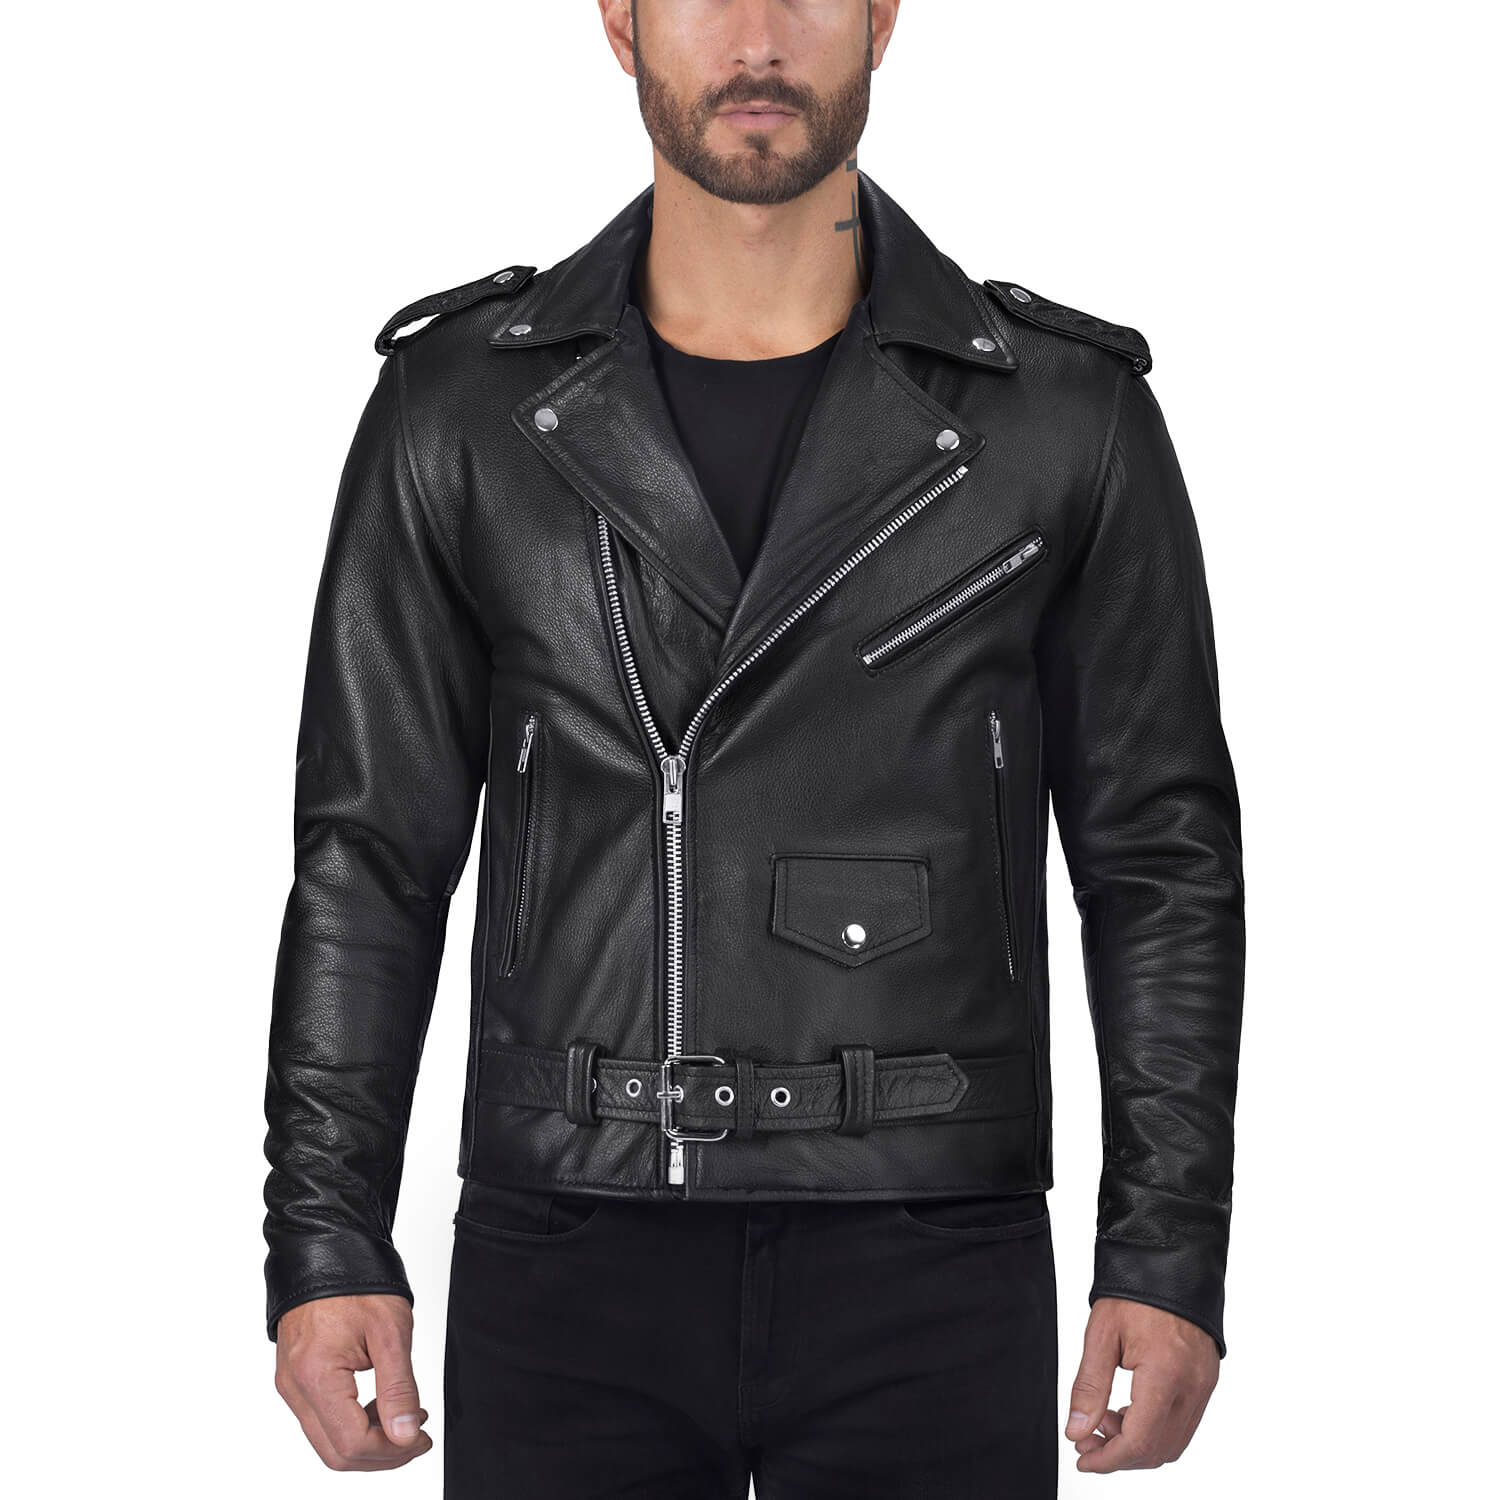 Men's Leather Biker Jackets : Buy in UK - Happy Gentleman UK